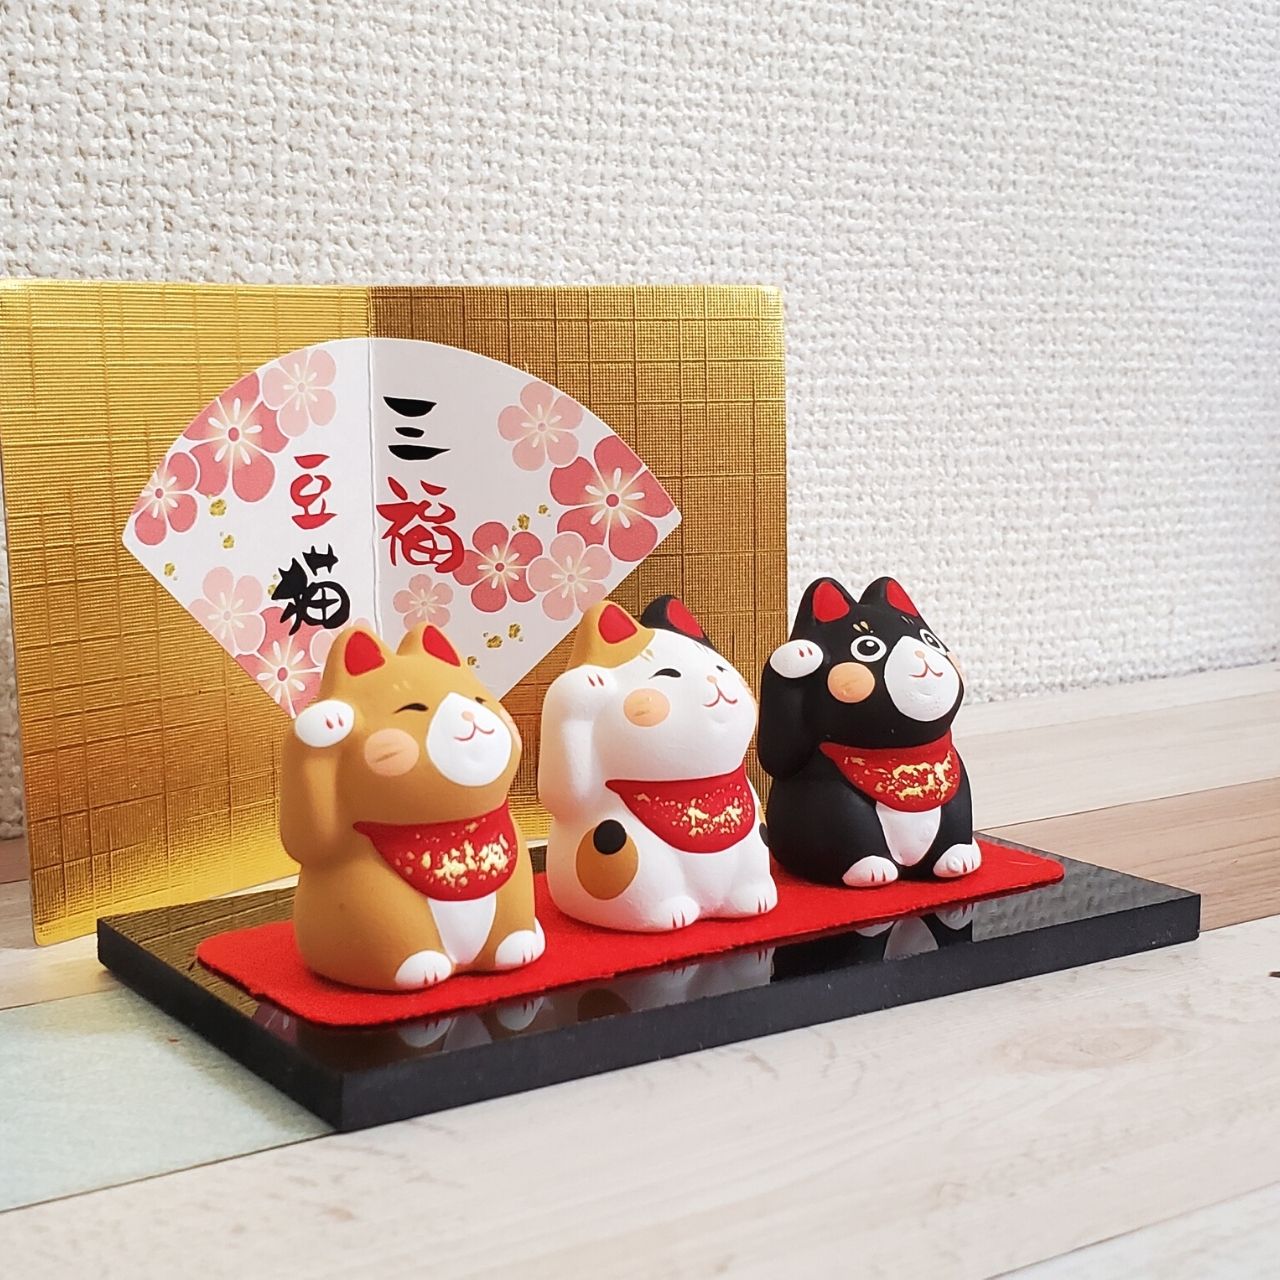 これはかわいい！素焼き陶器の3福豆人形(猫)